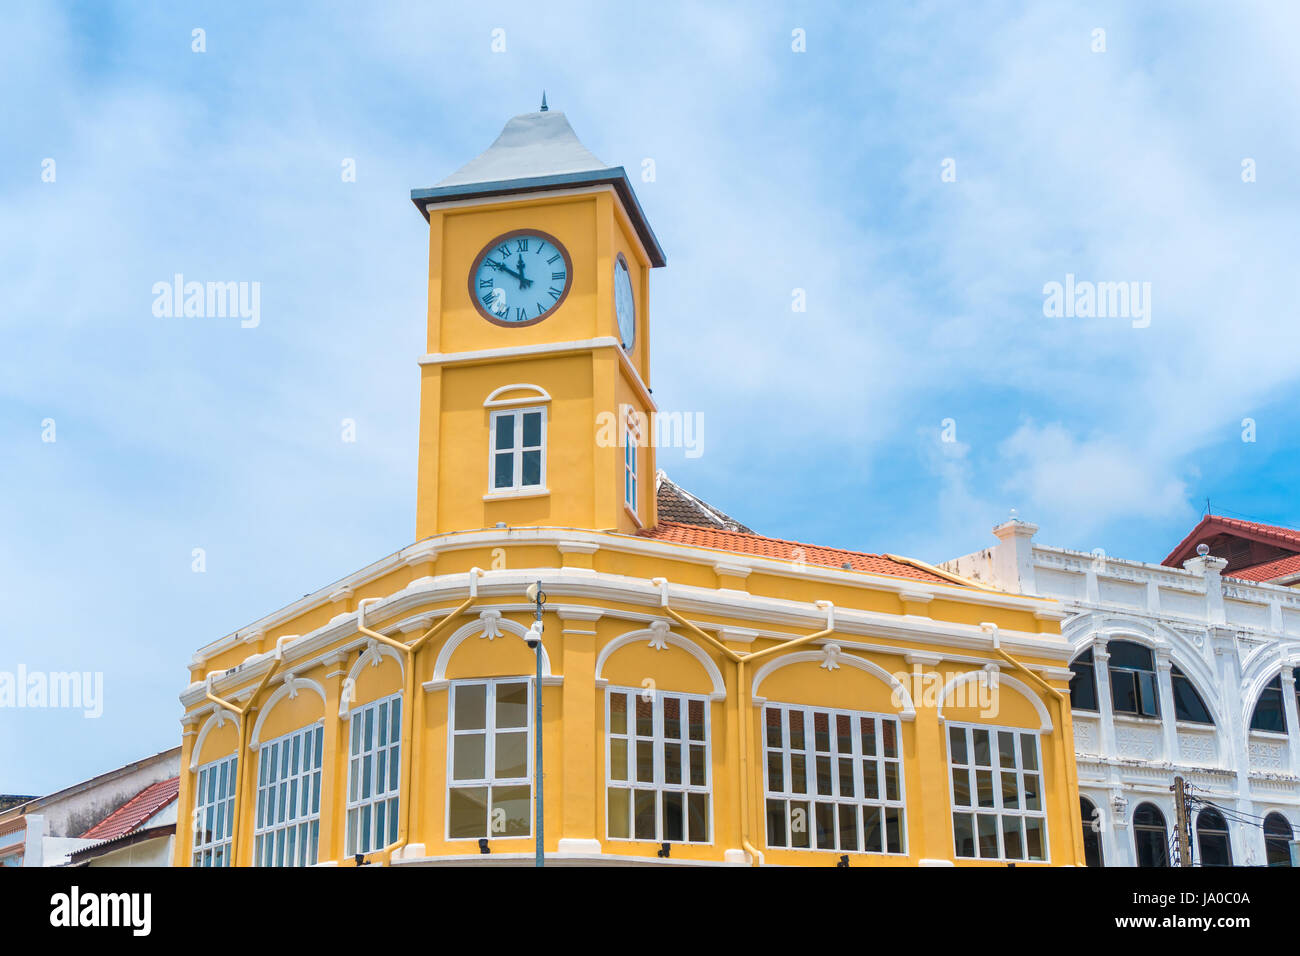 Vieille ville ou vieux bâtiments avec tour de l'horloge dans le style portugais Sino est célèbre de Phuket Thaïlande Banque D'Images